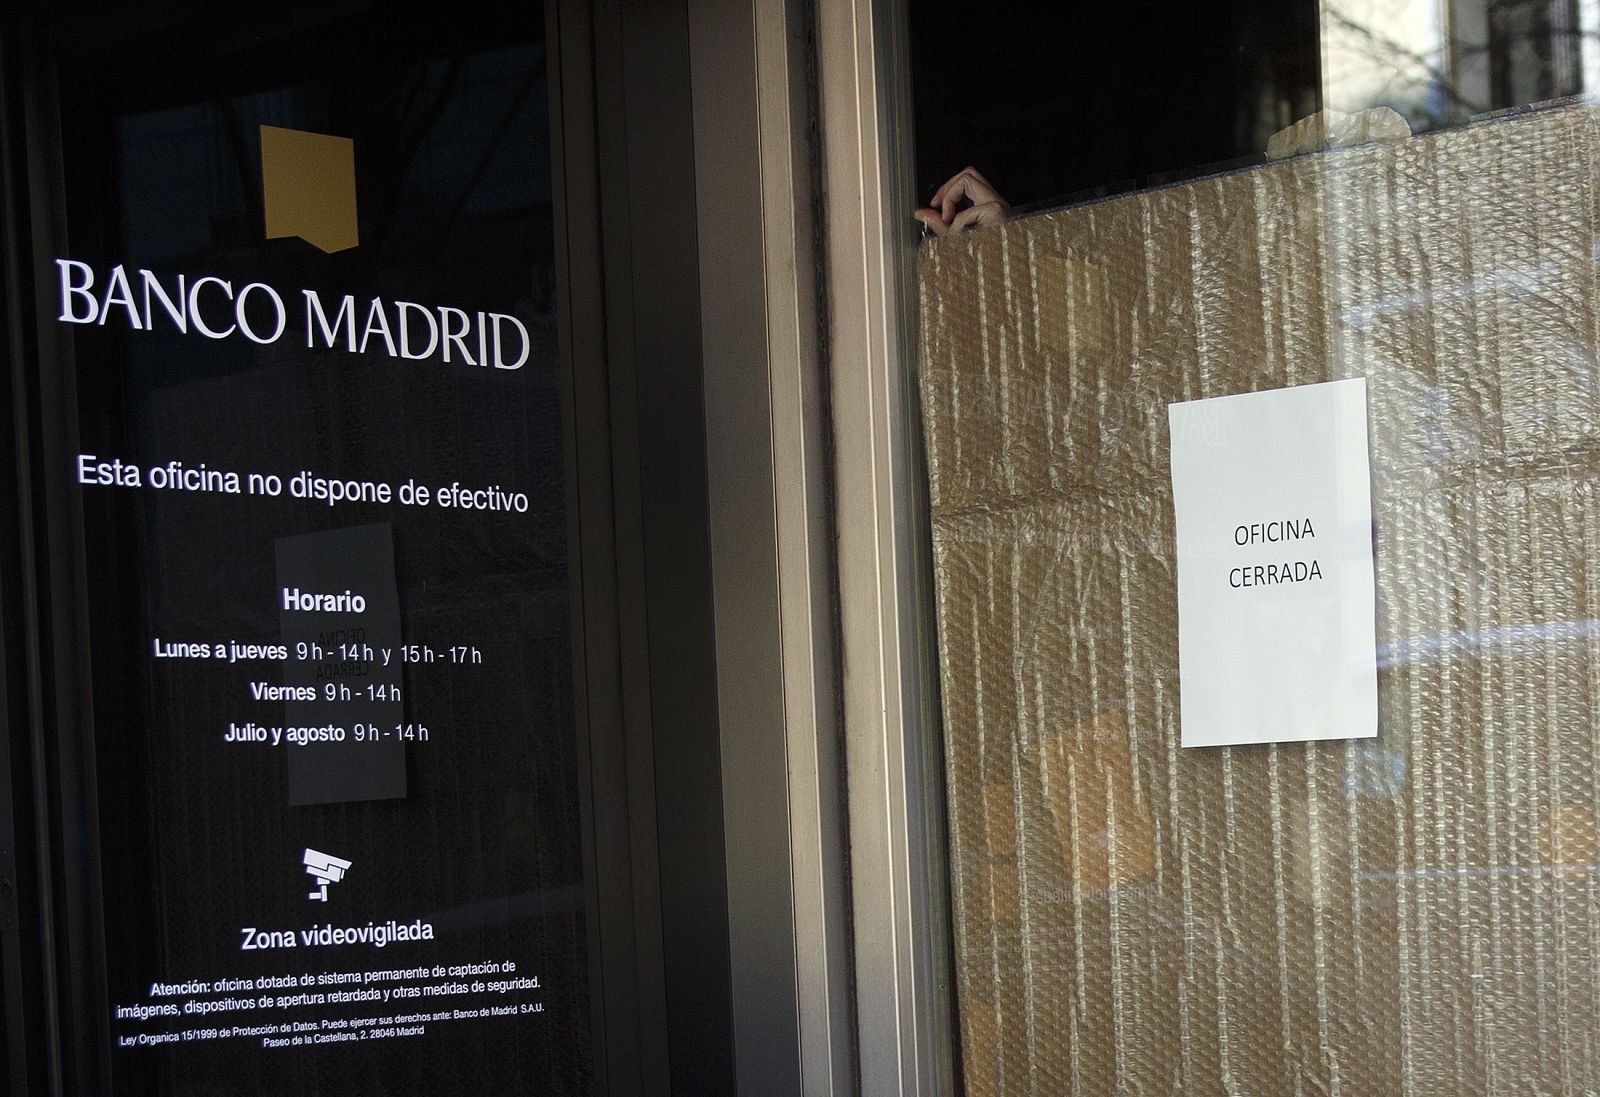 Puerta de entrada del Banco Madrid, donde se lee en un cartel "oficina cerrada"